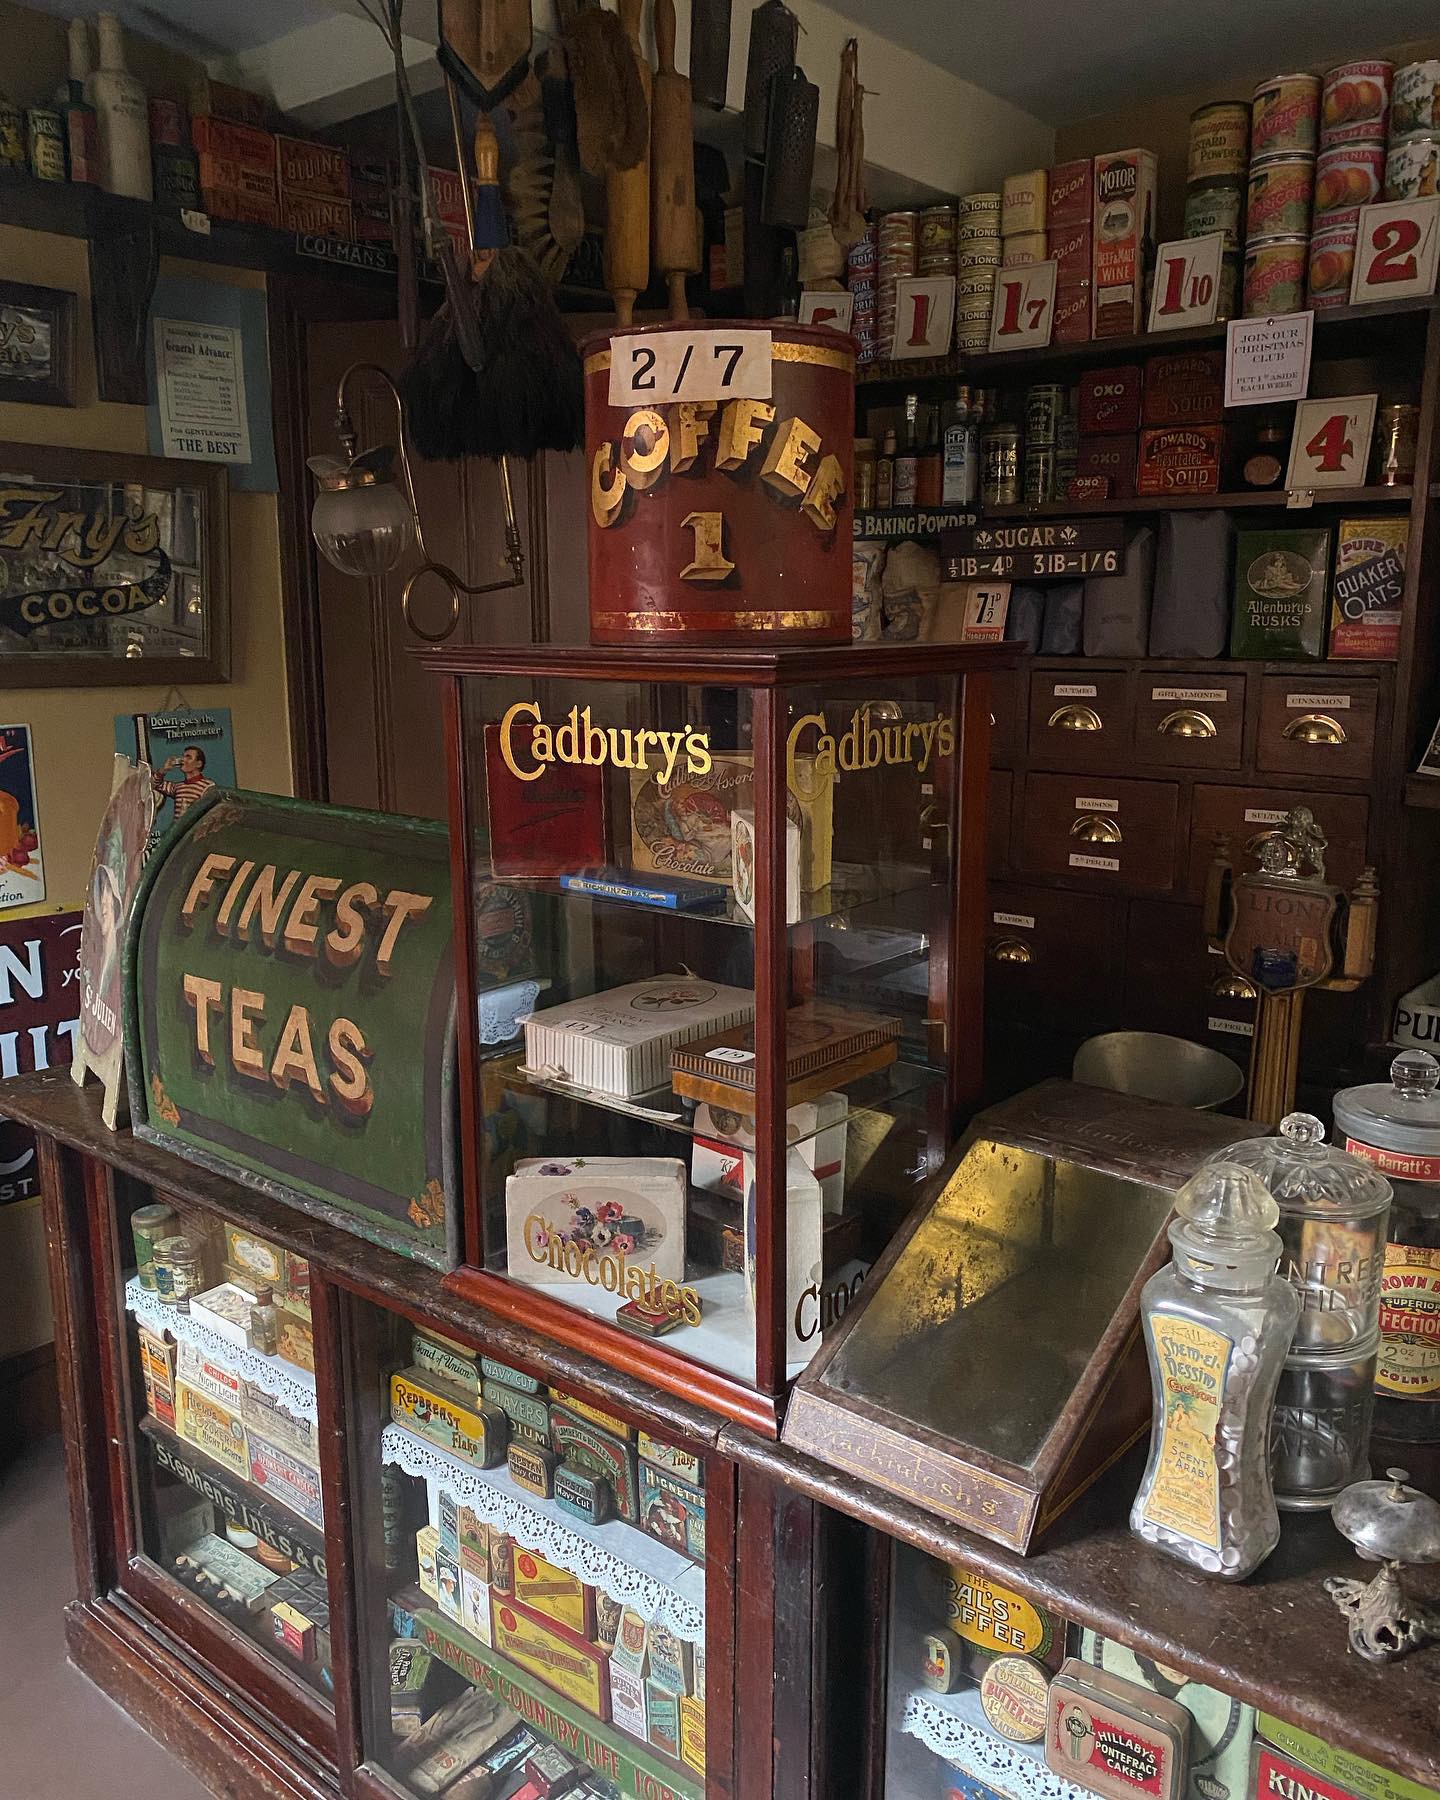 1920s vintage shop interior with Cadbury's cabinet